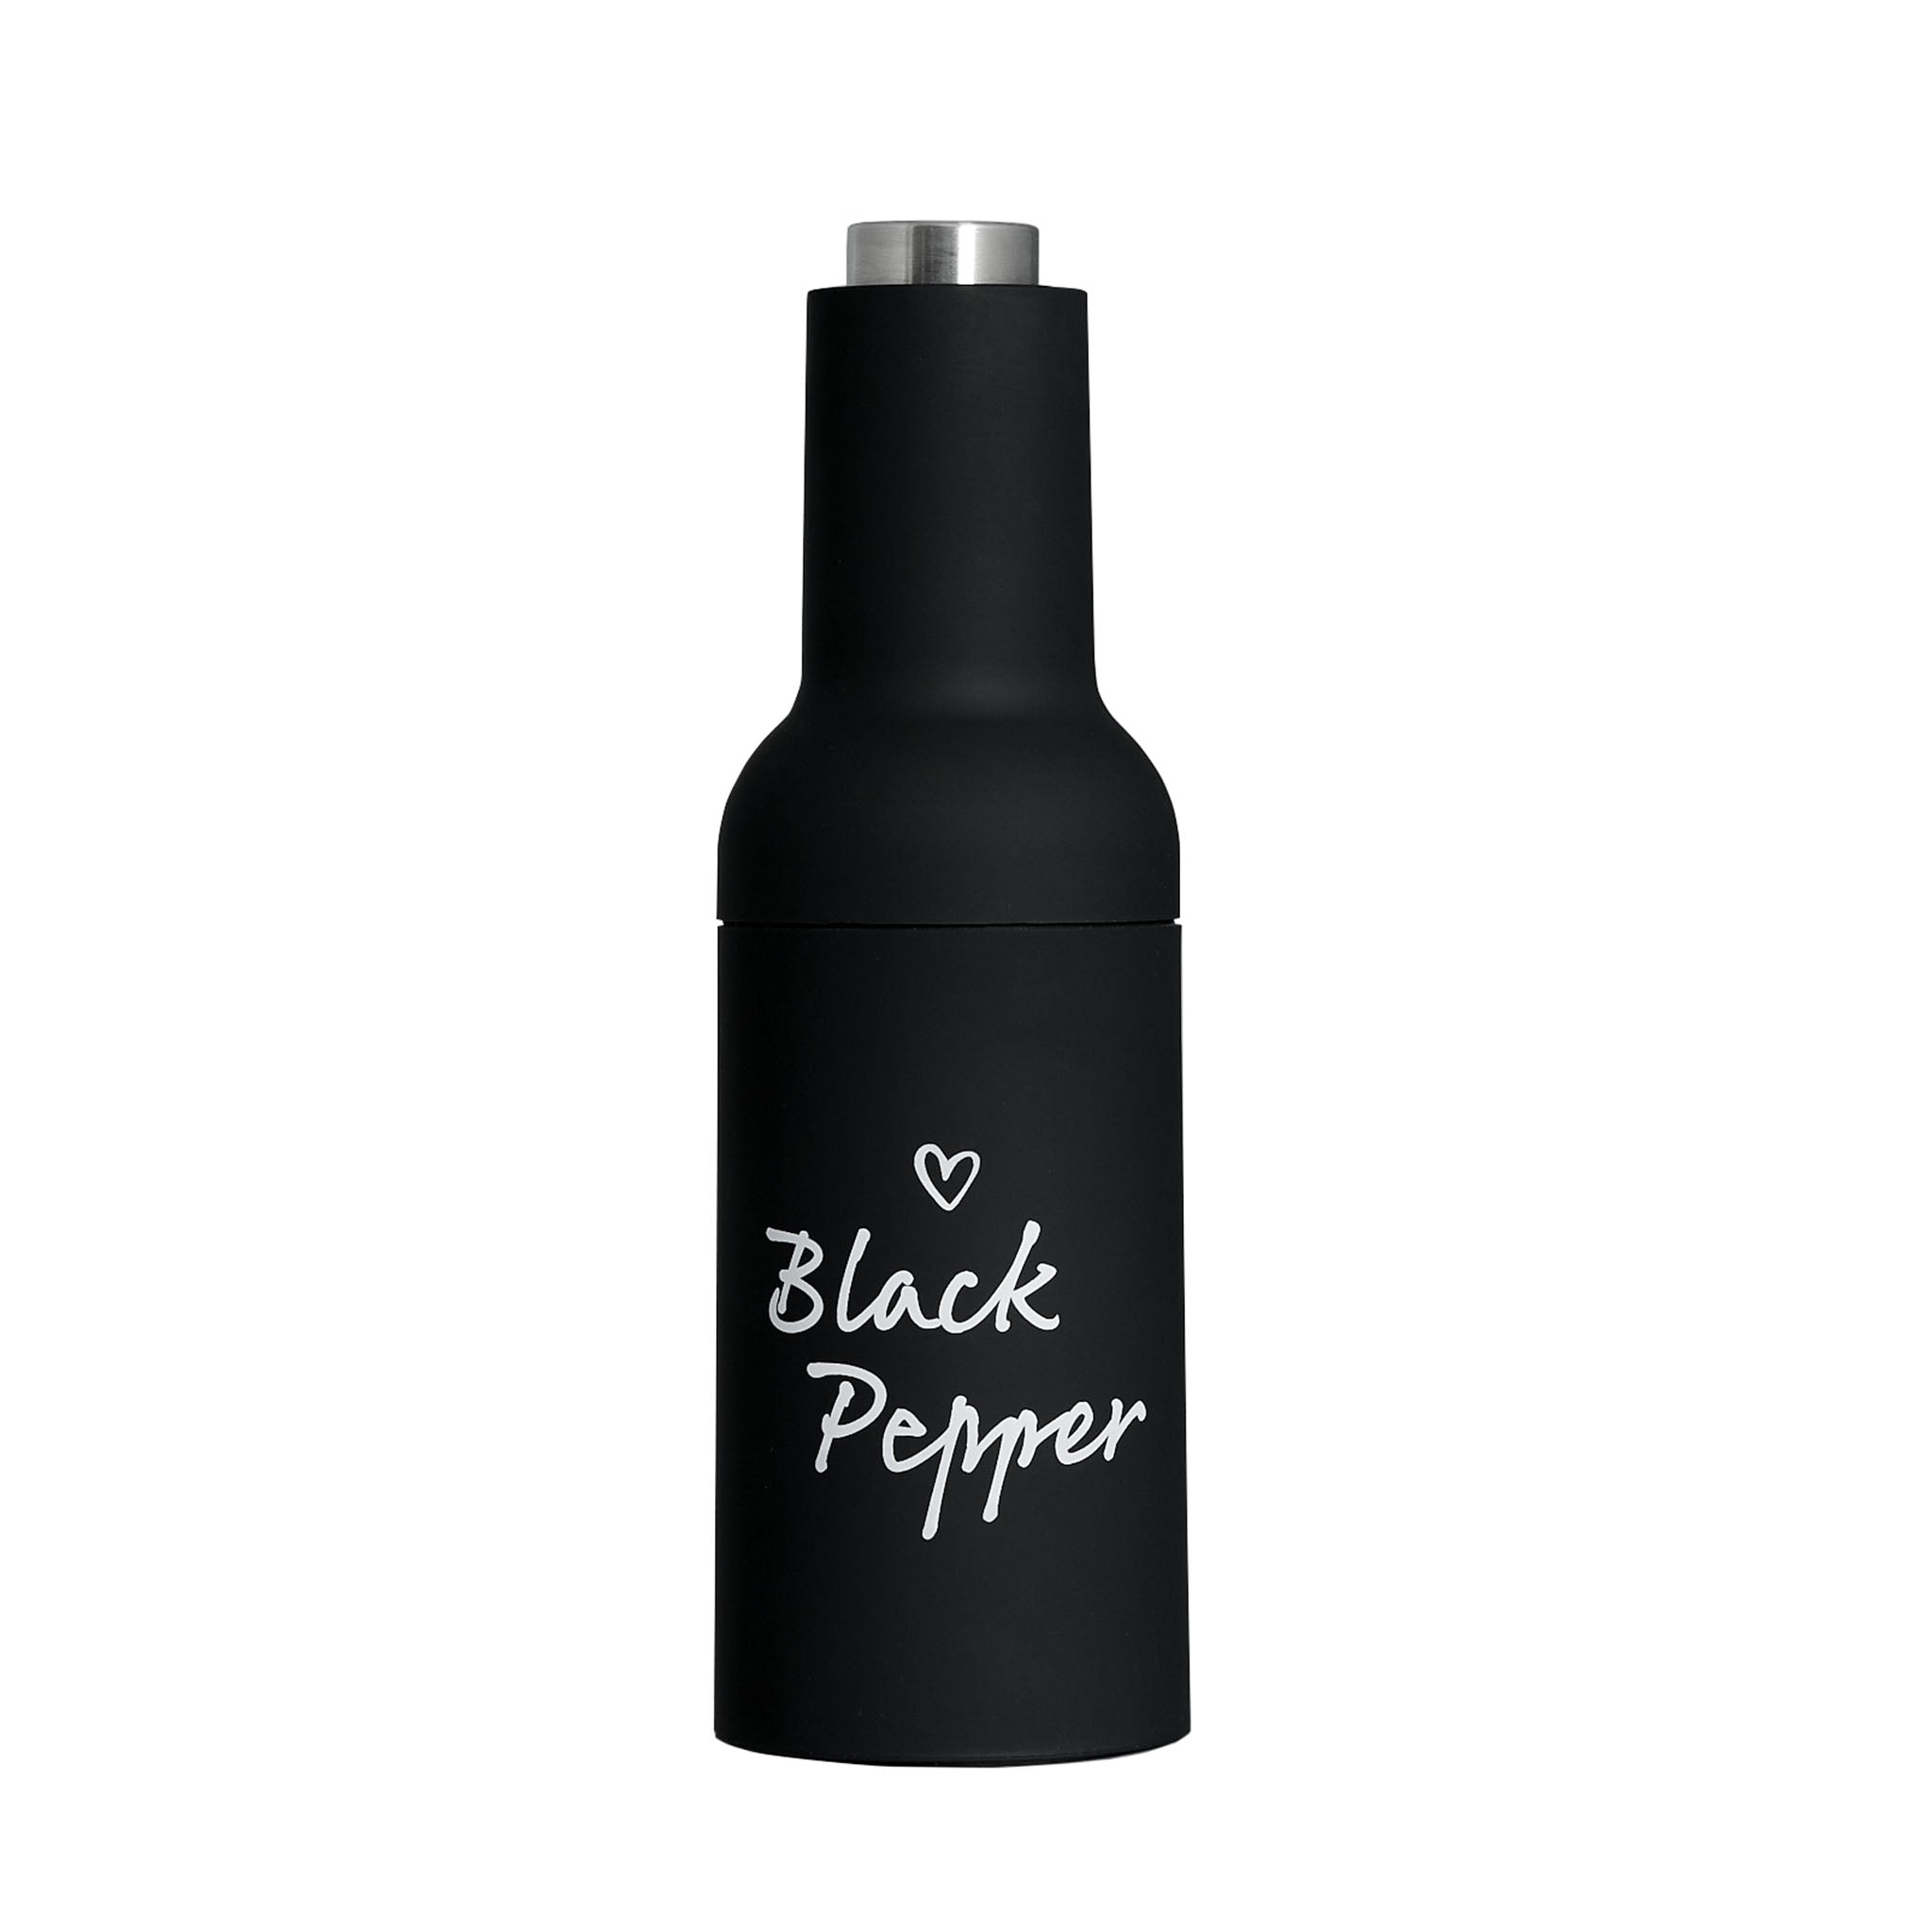 "Black Pepper" Electric Pepper Grinder